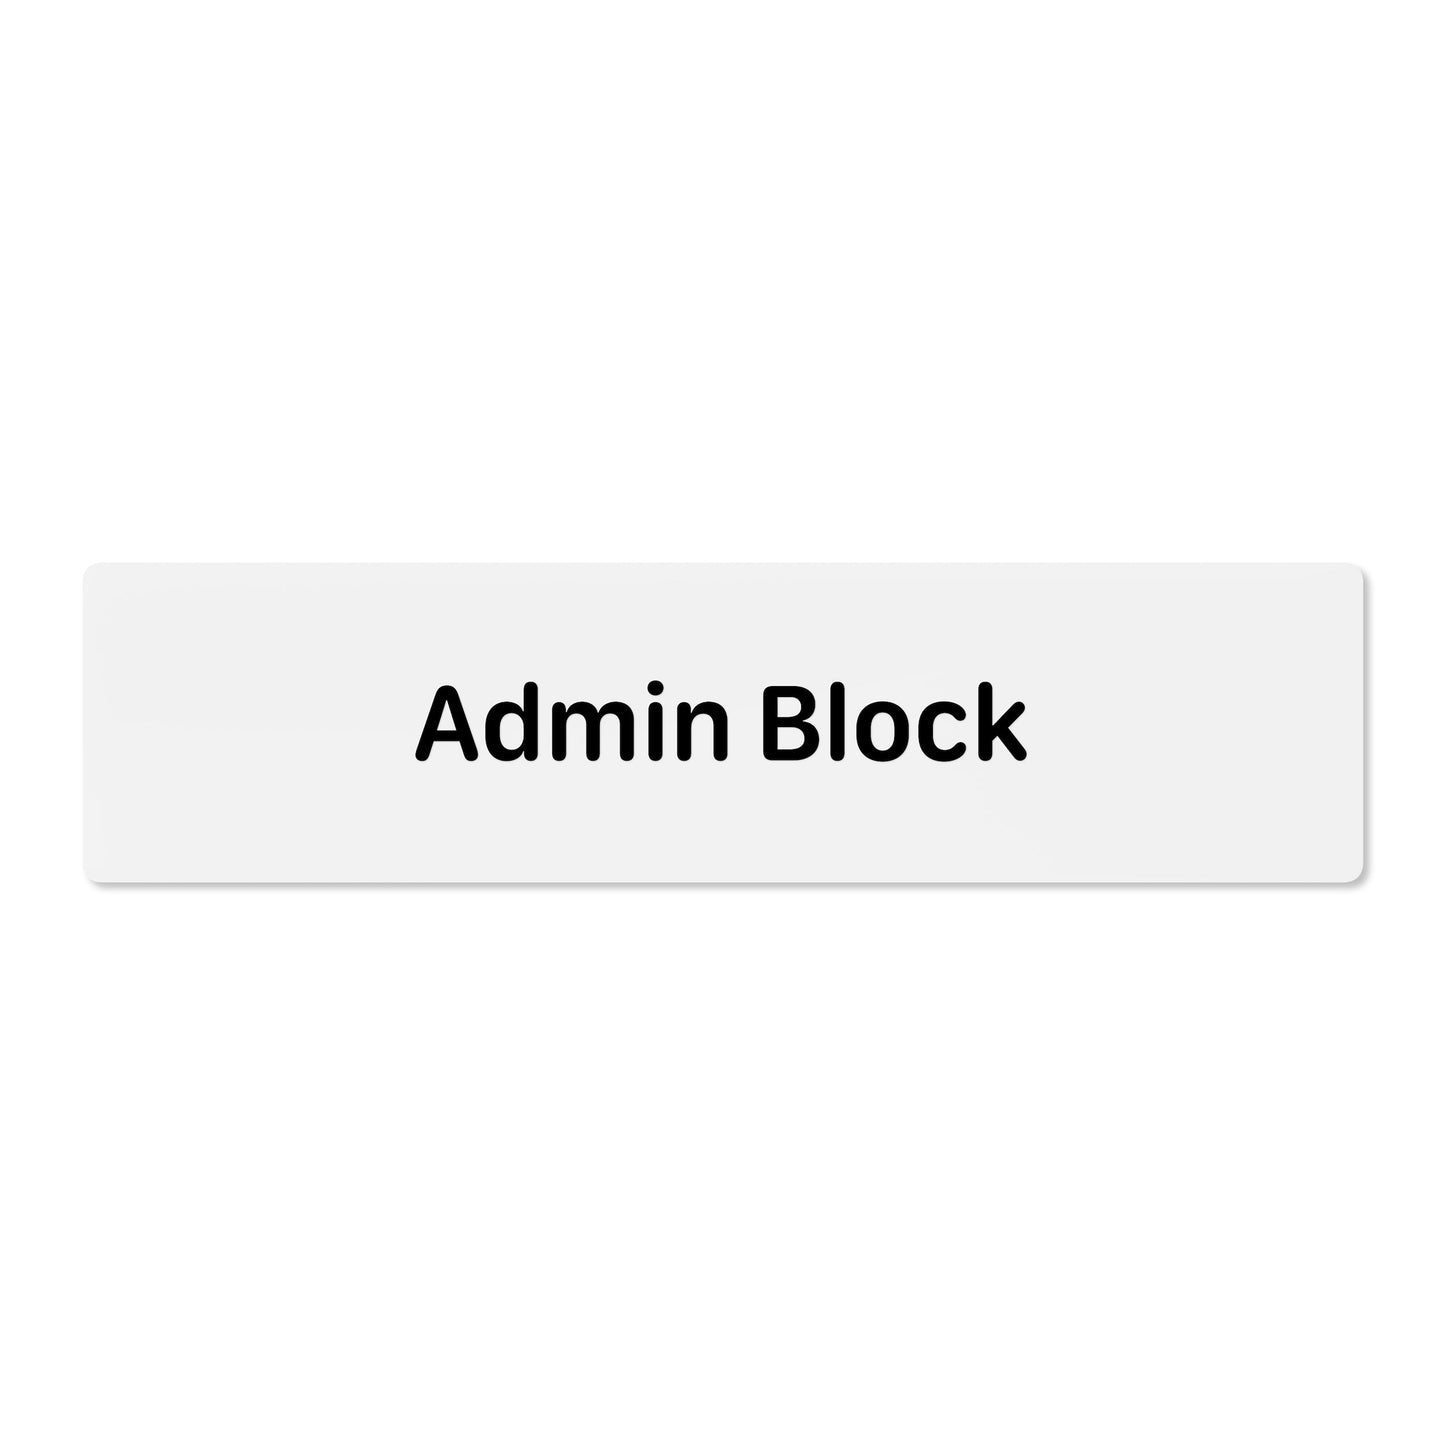 Admin Block